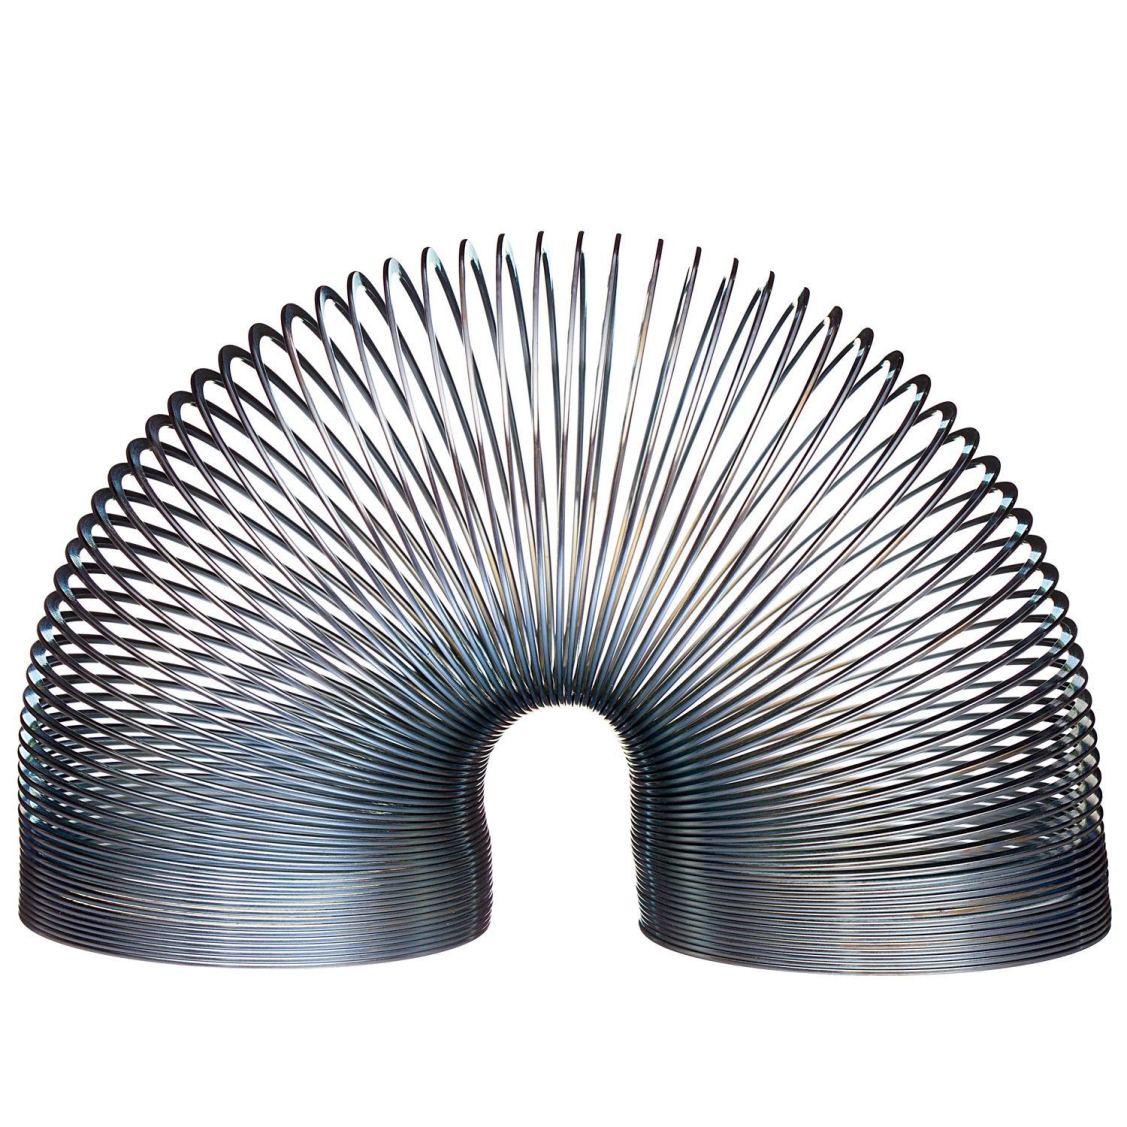 Игрушка-антистресс ABtoys Пружинка металлическая, диаметр 4,6 см, цвет серый